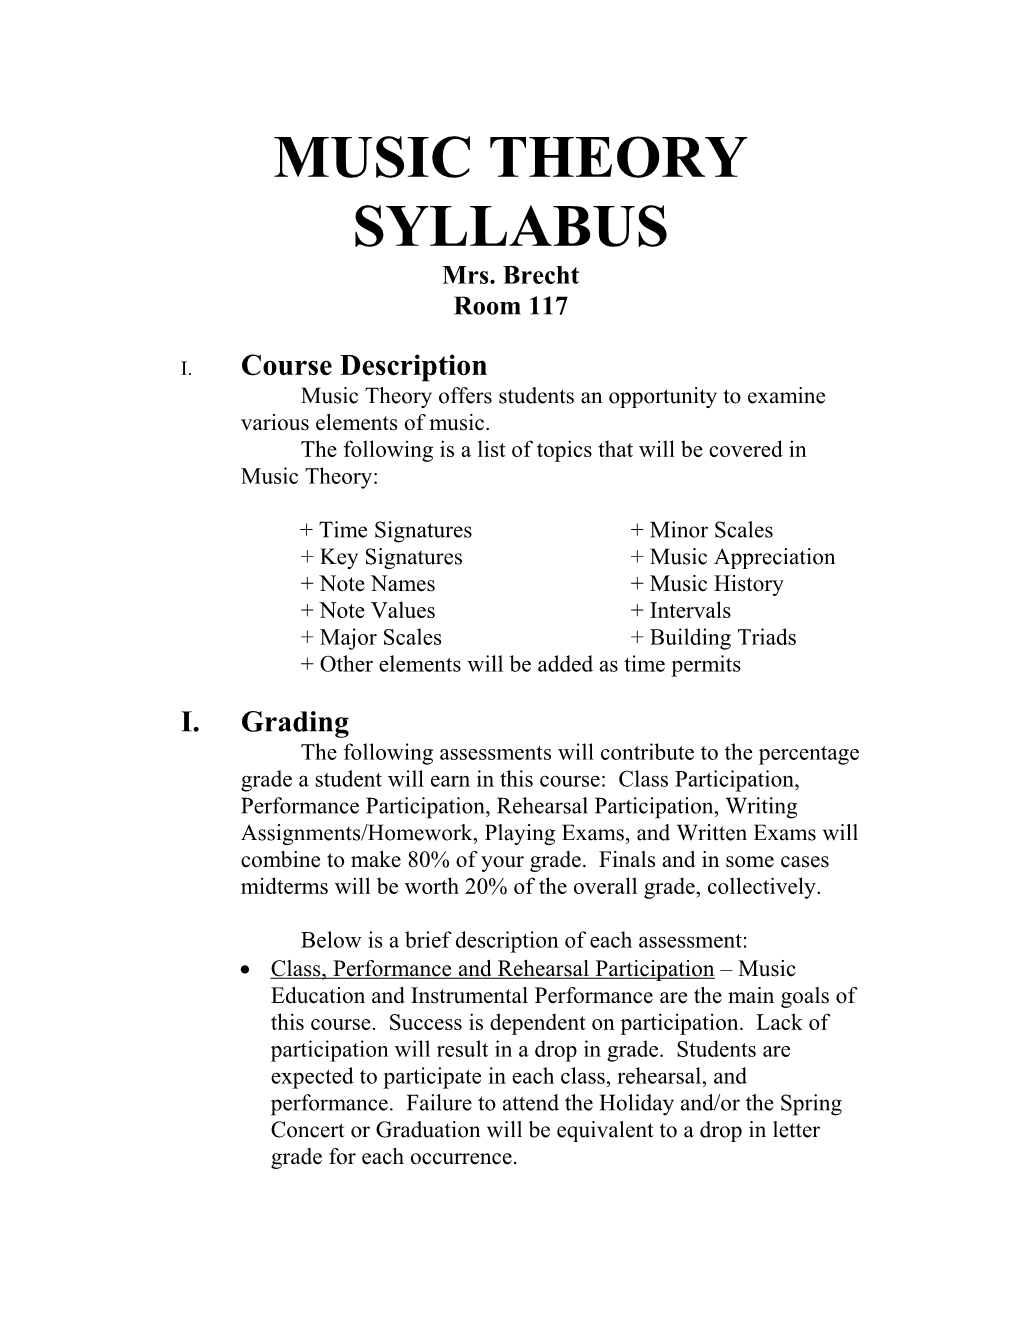 Music Theory Syllabus